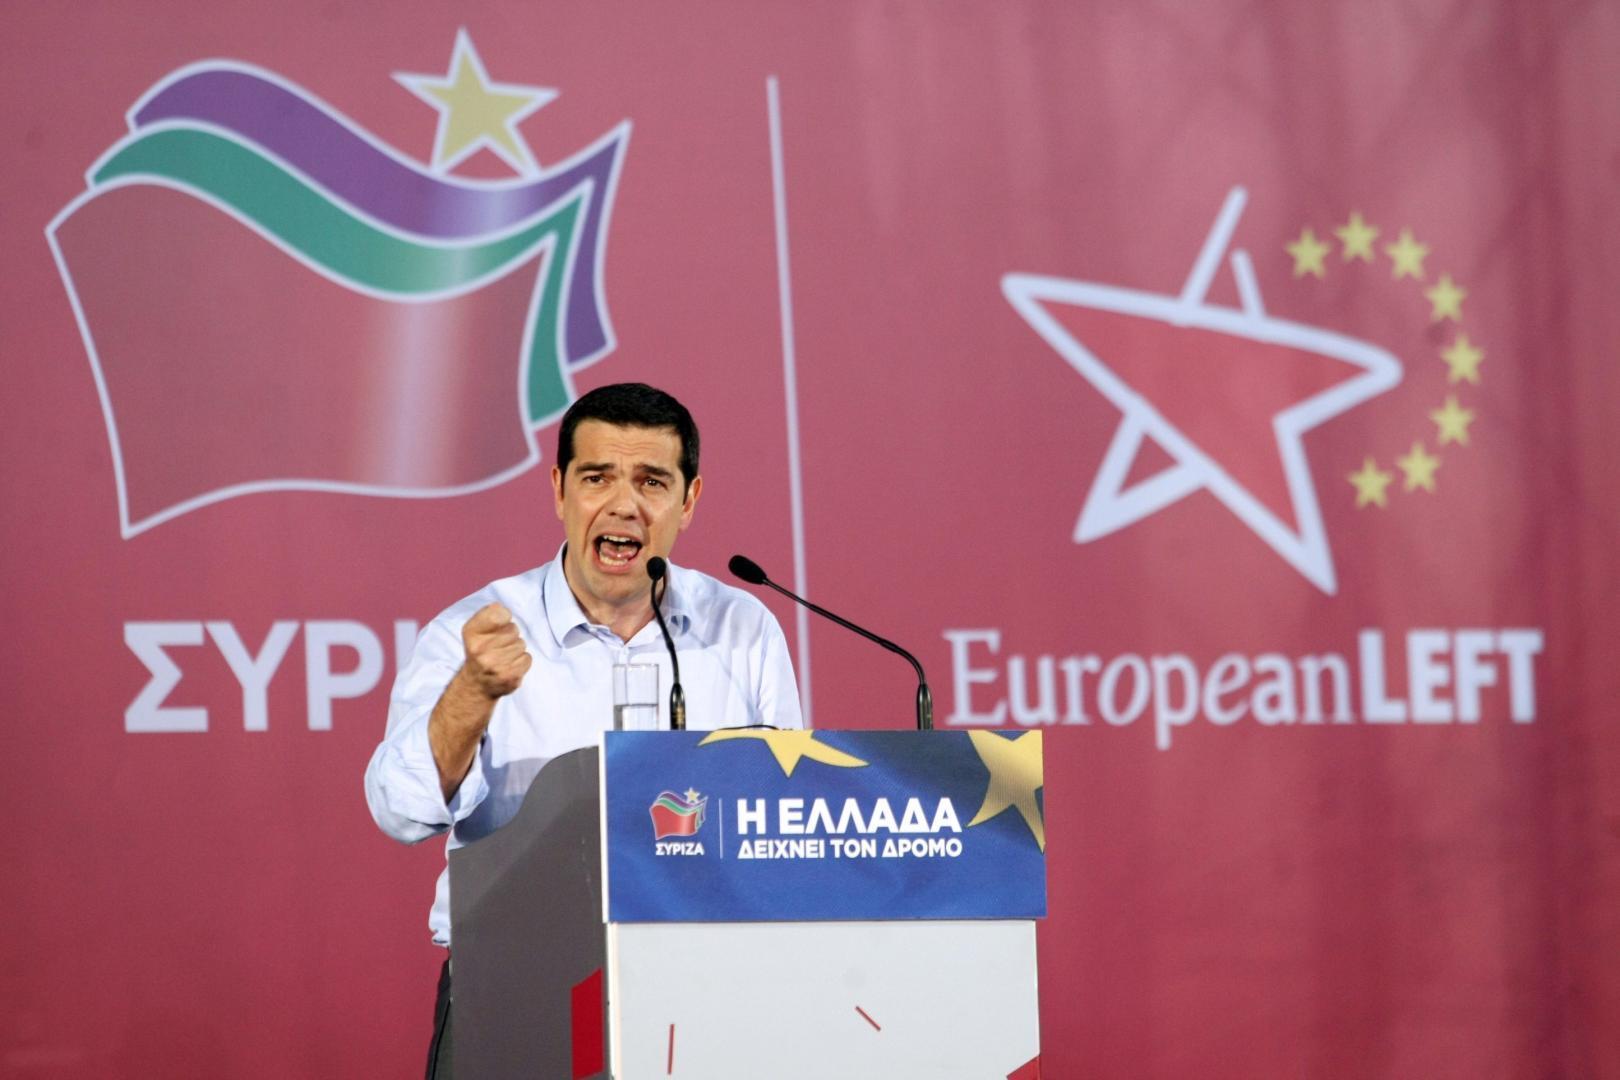 7 iulie, alegeri anticipate confirmate în Grecia